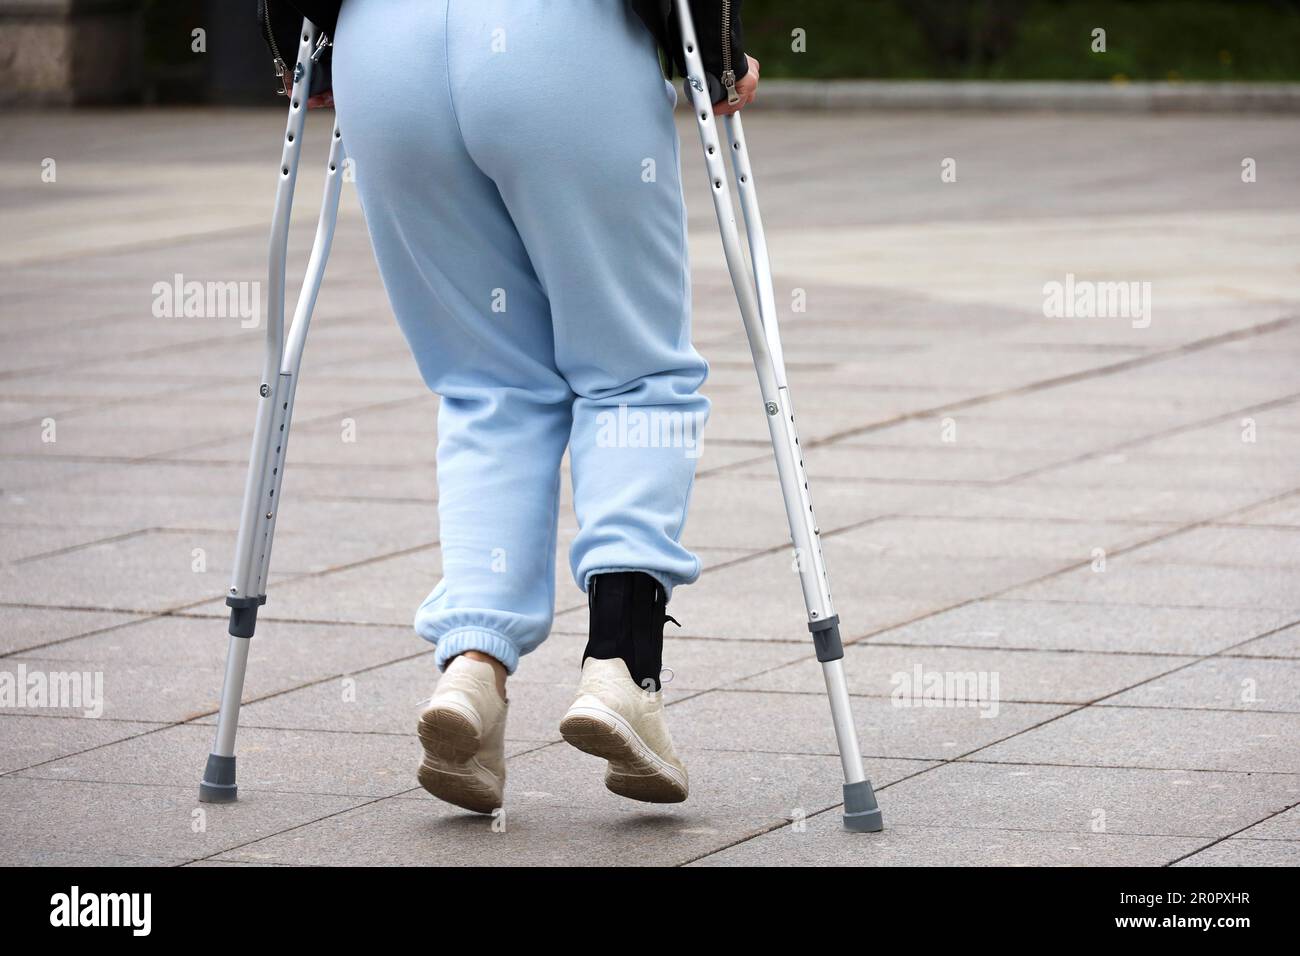 Frau läuft mit Krücken auf einer Straße, weibliche Beine auf dem Bürgersteig. Beinverletzung, Fraktur oder Verstauchung Stockfoto